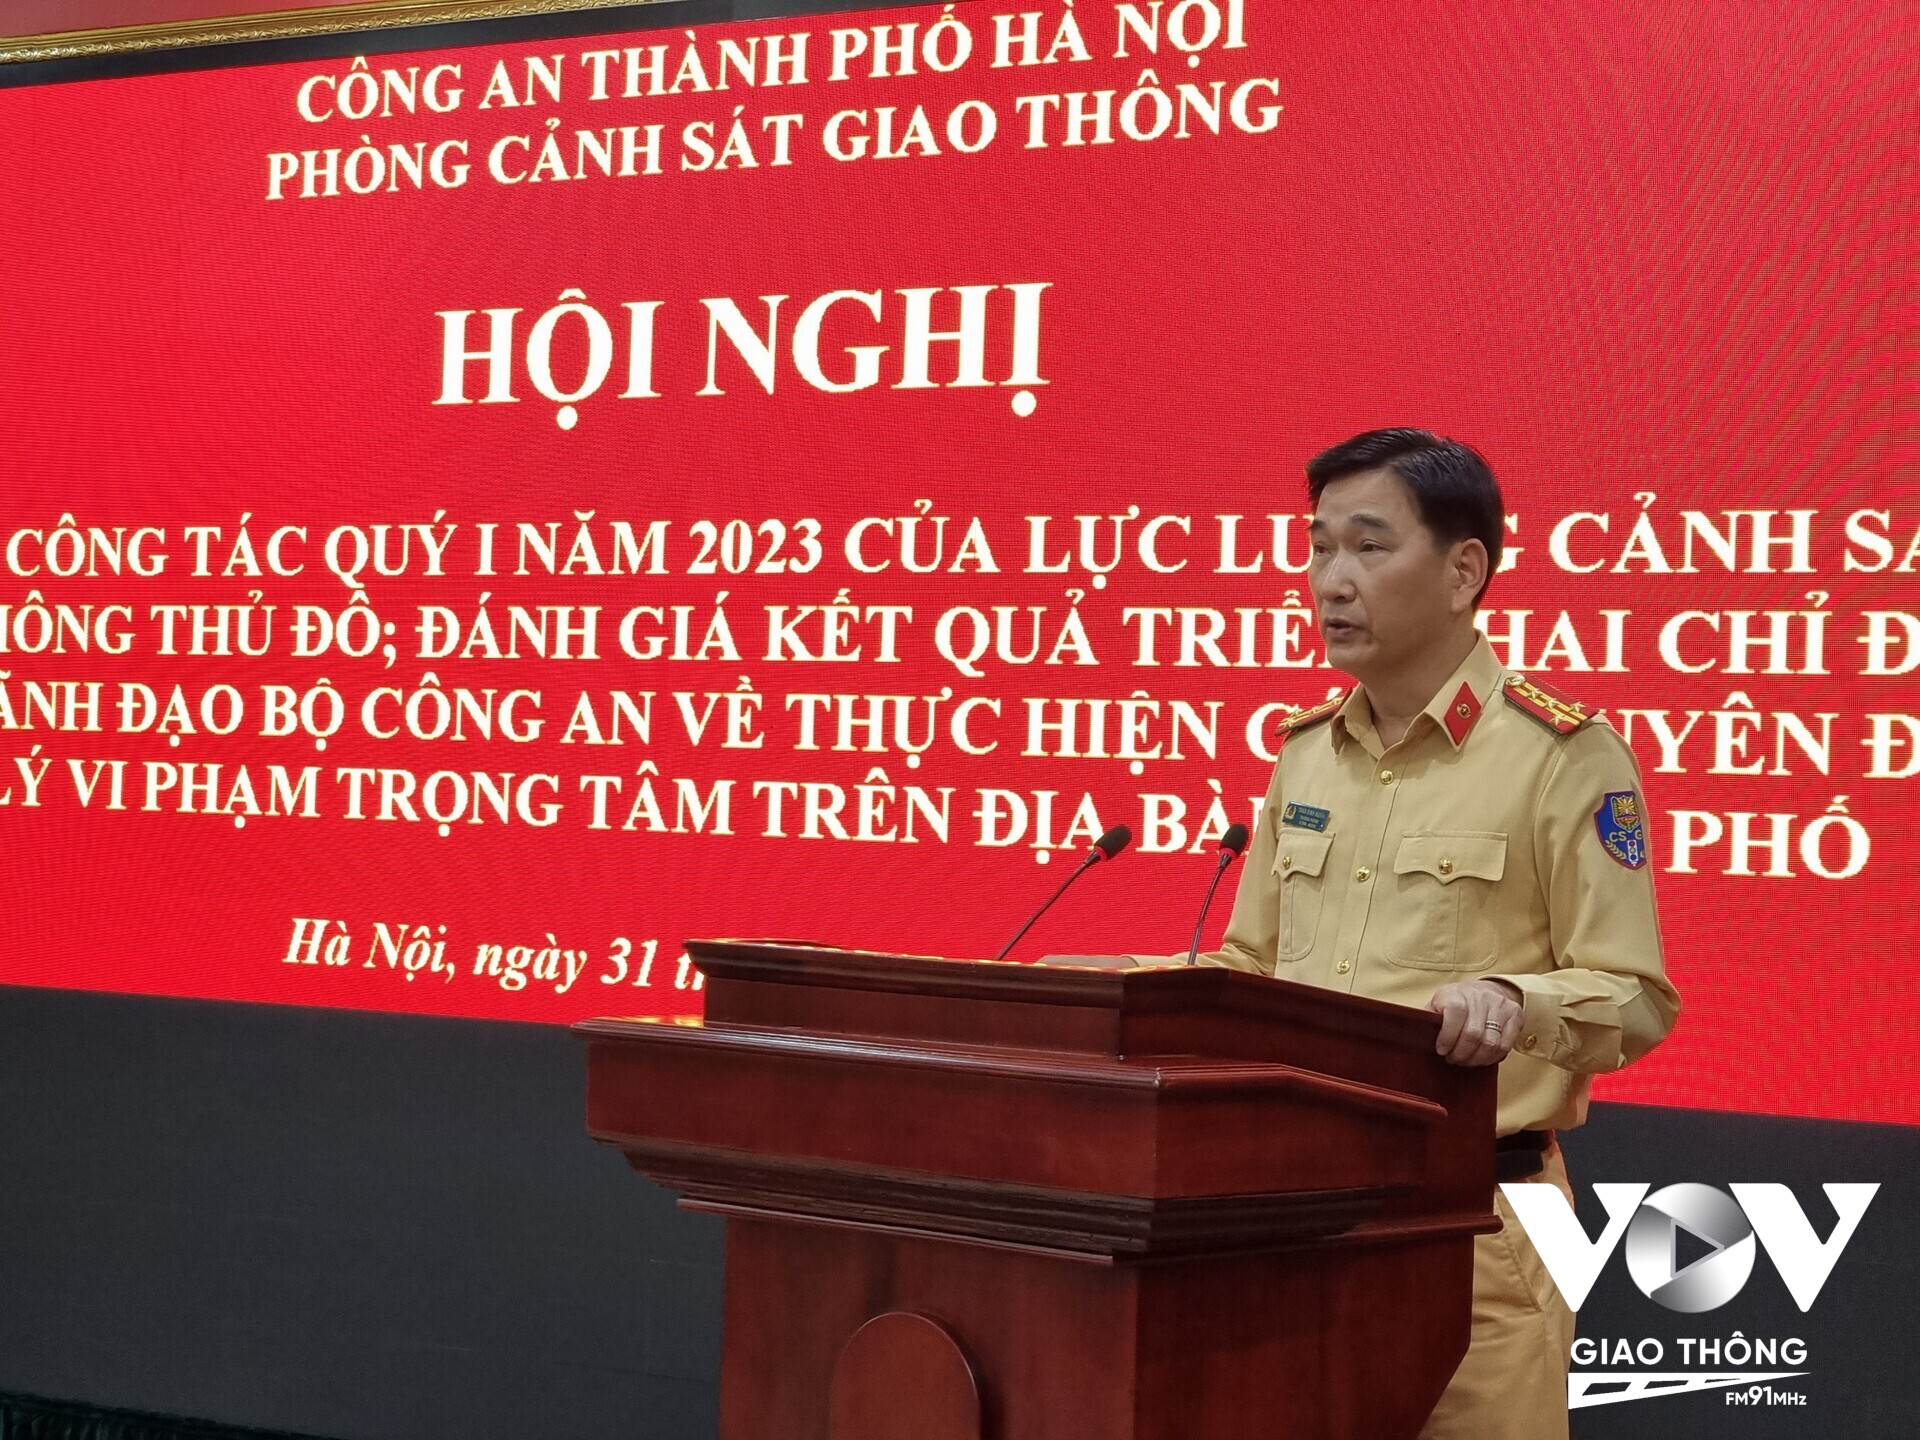 Đại tá Trần Đình Nghĩa, Trưởng phòng CSGT Công an TP. Hà Nội đánh giá về tình hình ATGT trên địa bàn thủ đô trong 3 tháng đầu năm